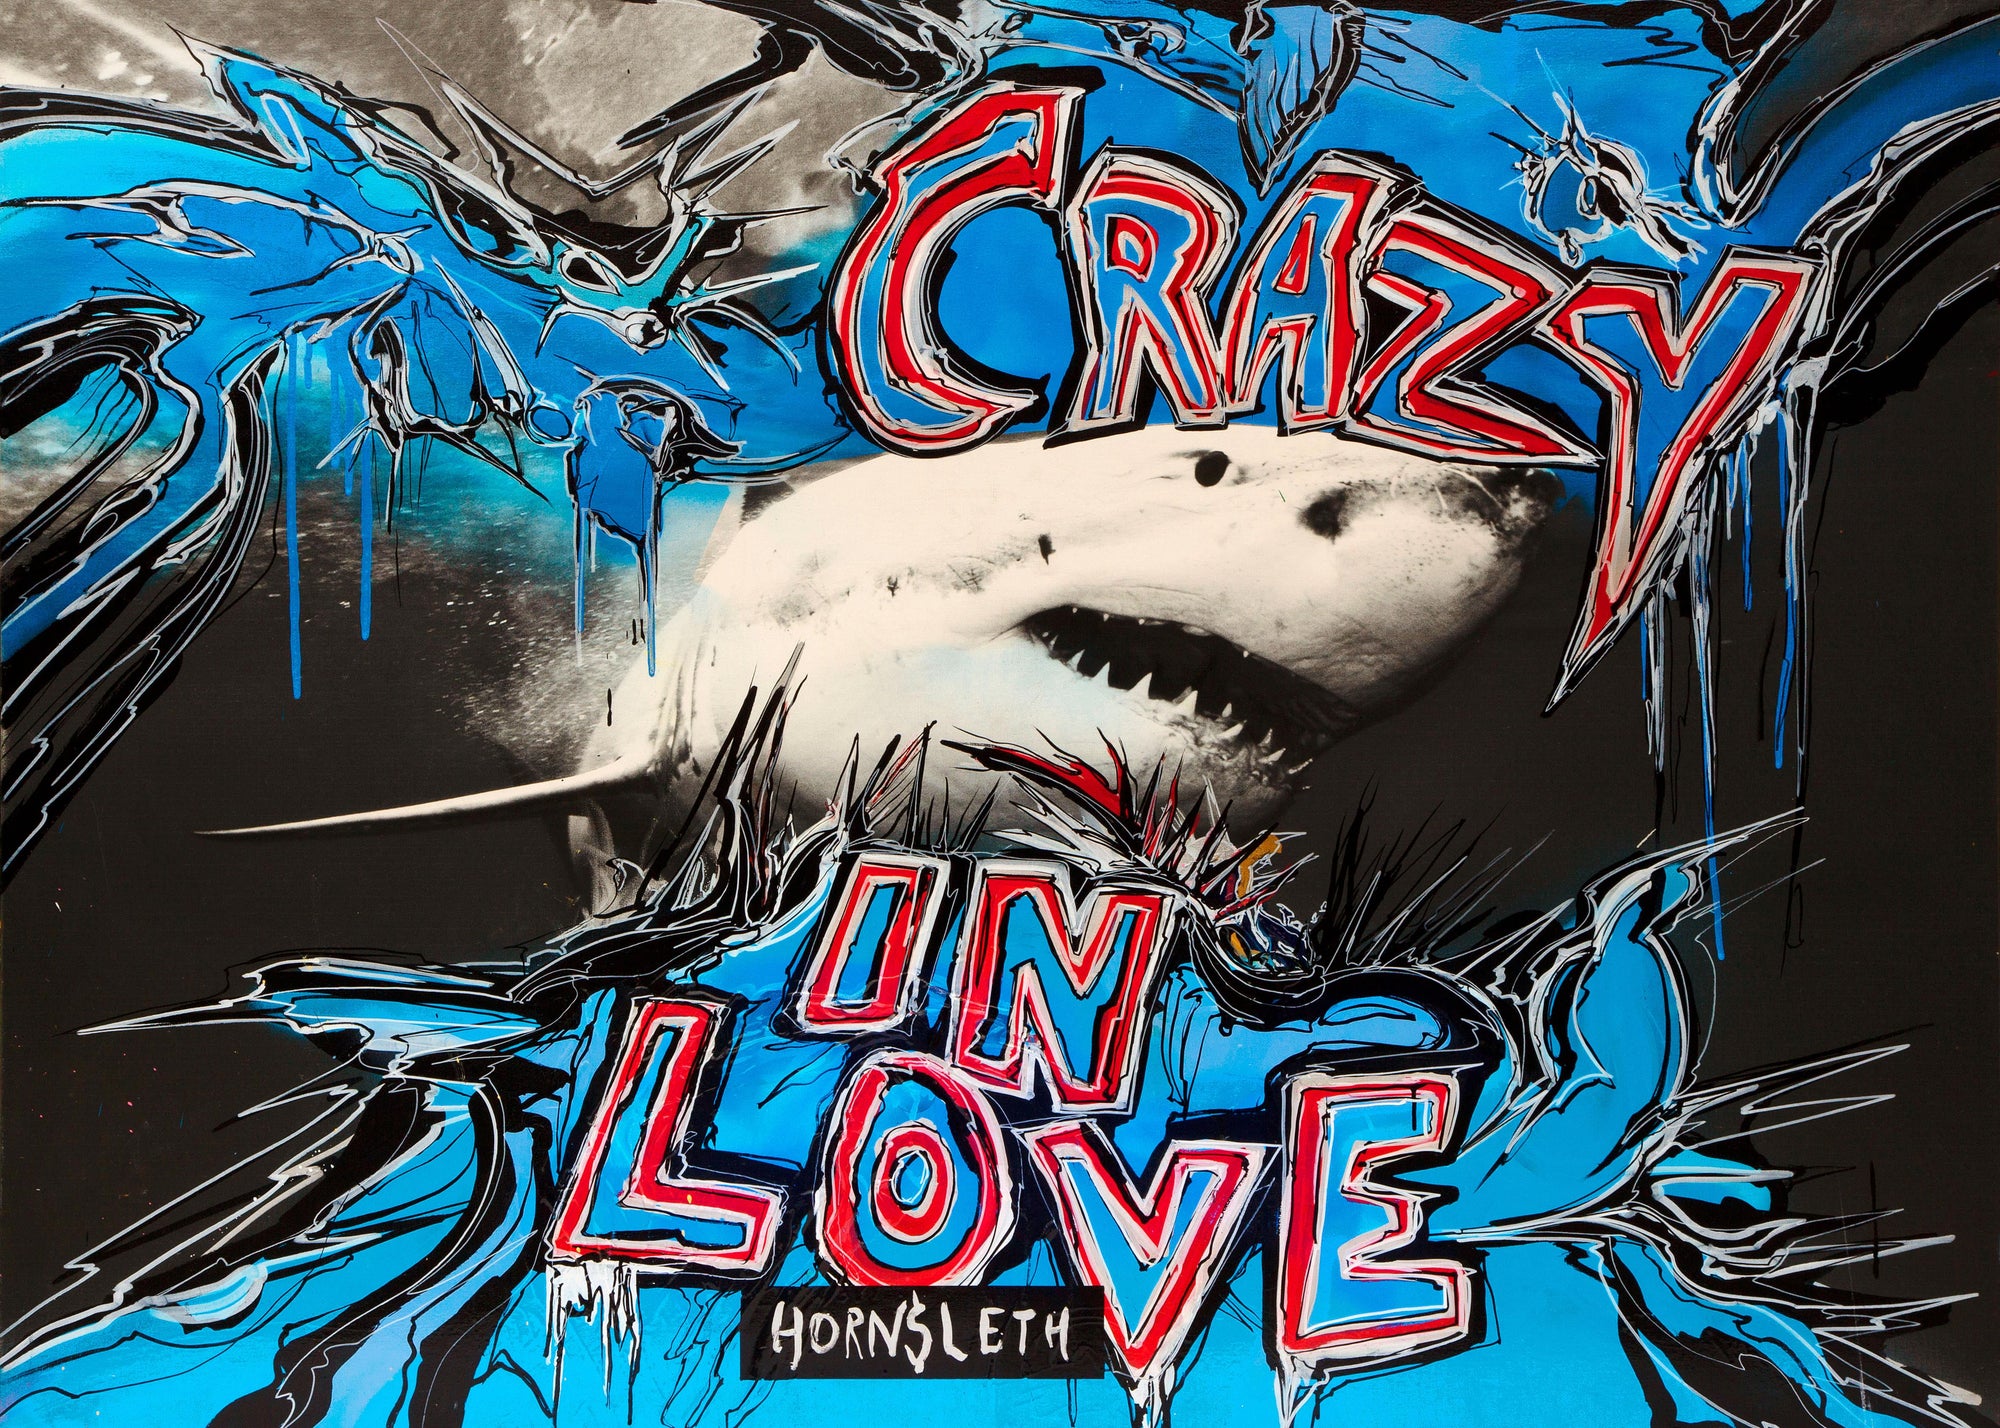 Crazy in love shark - Plakat af Hornsleth